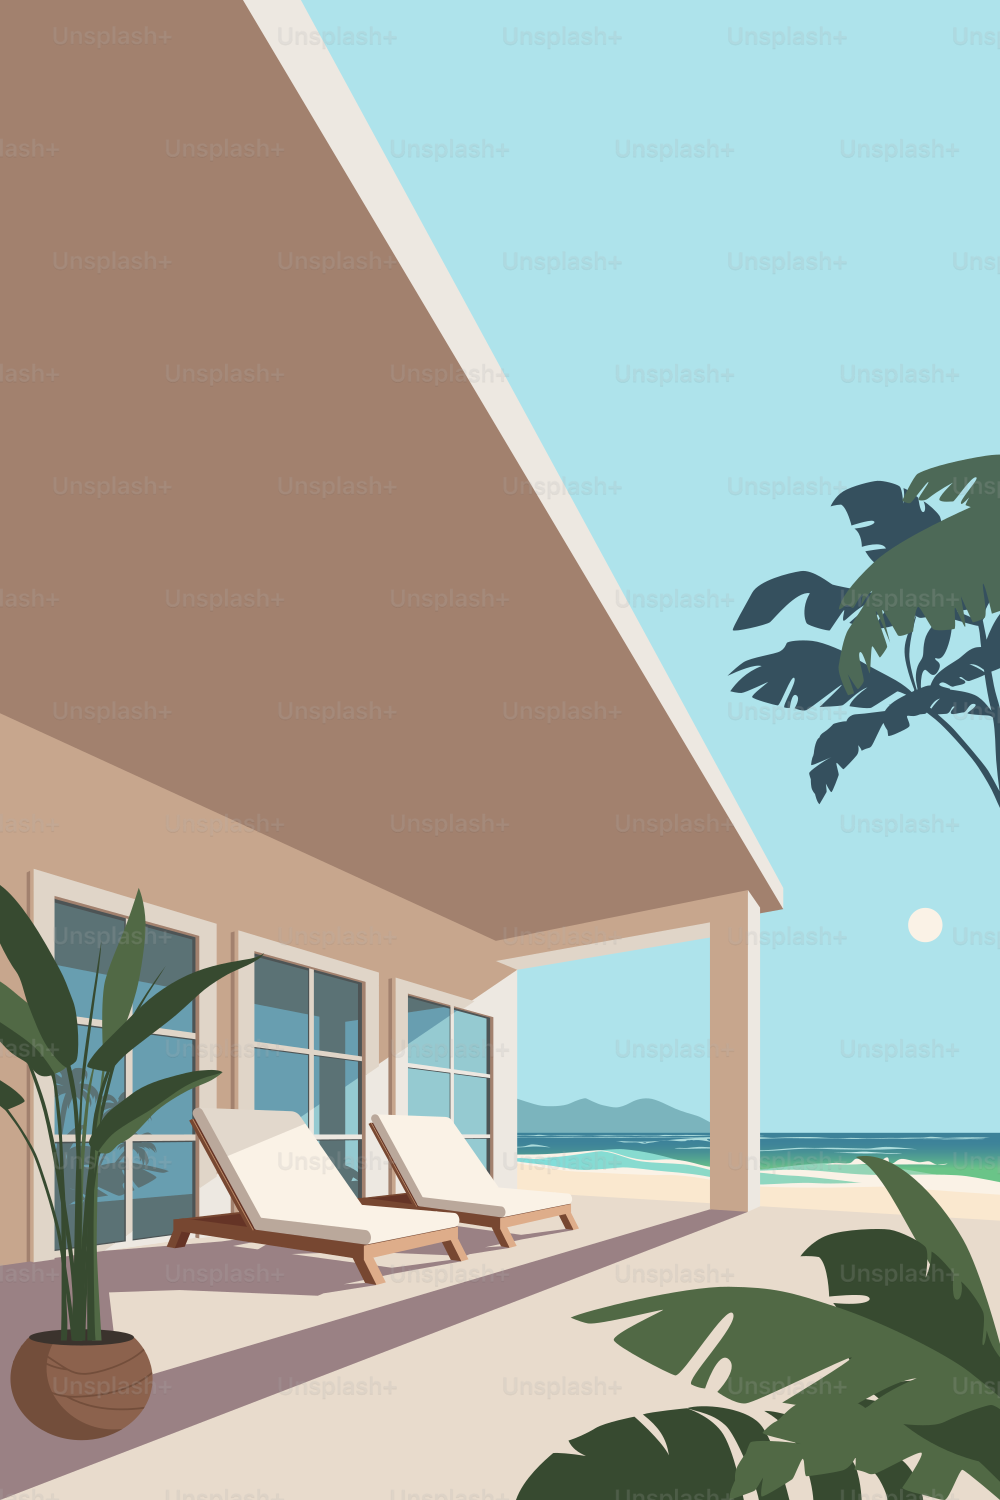 Zwei bequeme Liegestühle auf der Terrasse am Meer. Villa am Meer. Palmen und Sandstrand in den Strahlen der tropischen Sonne. Touristenort, um eine Pause einzulegen.